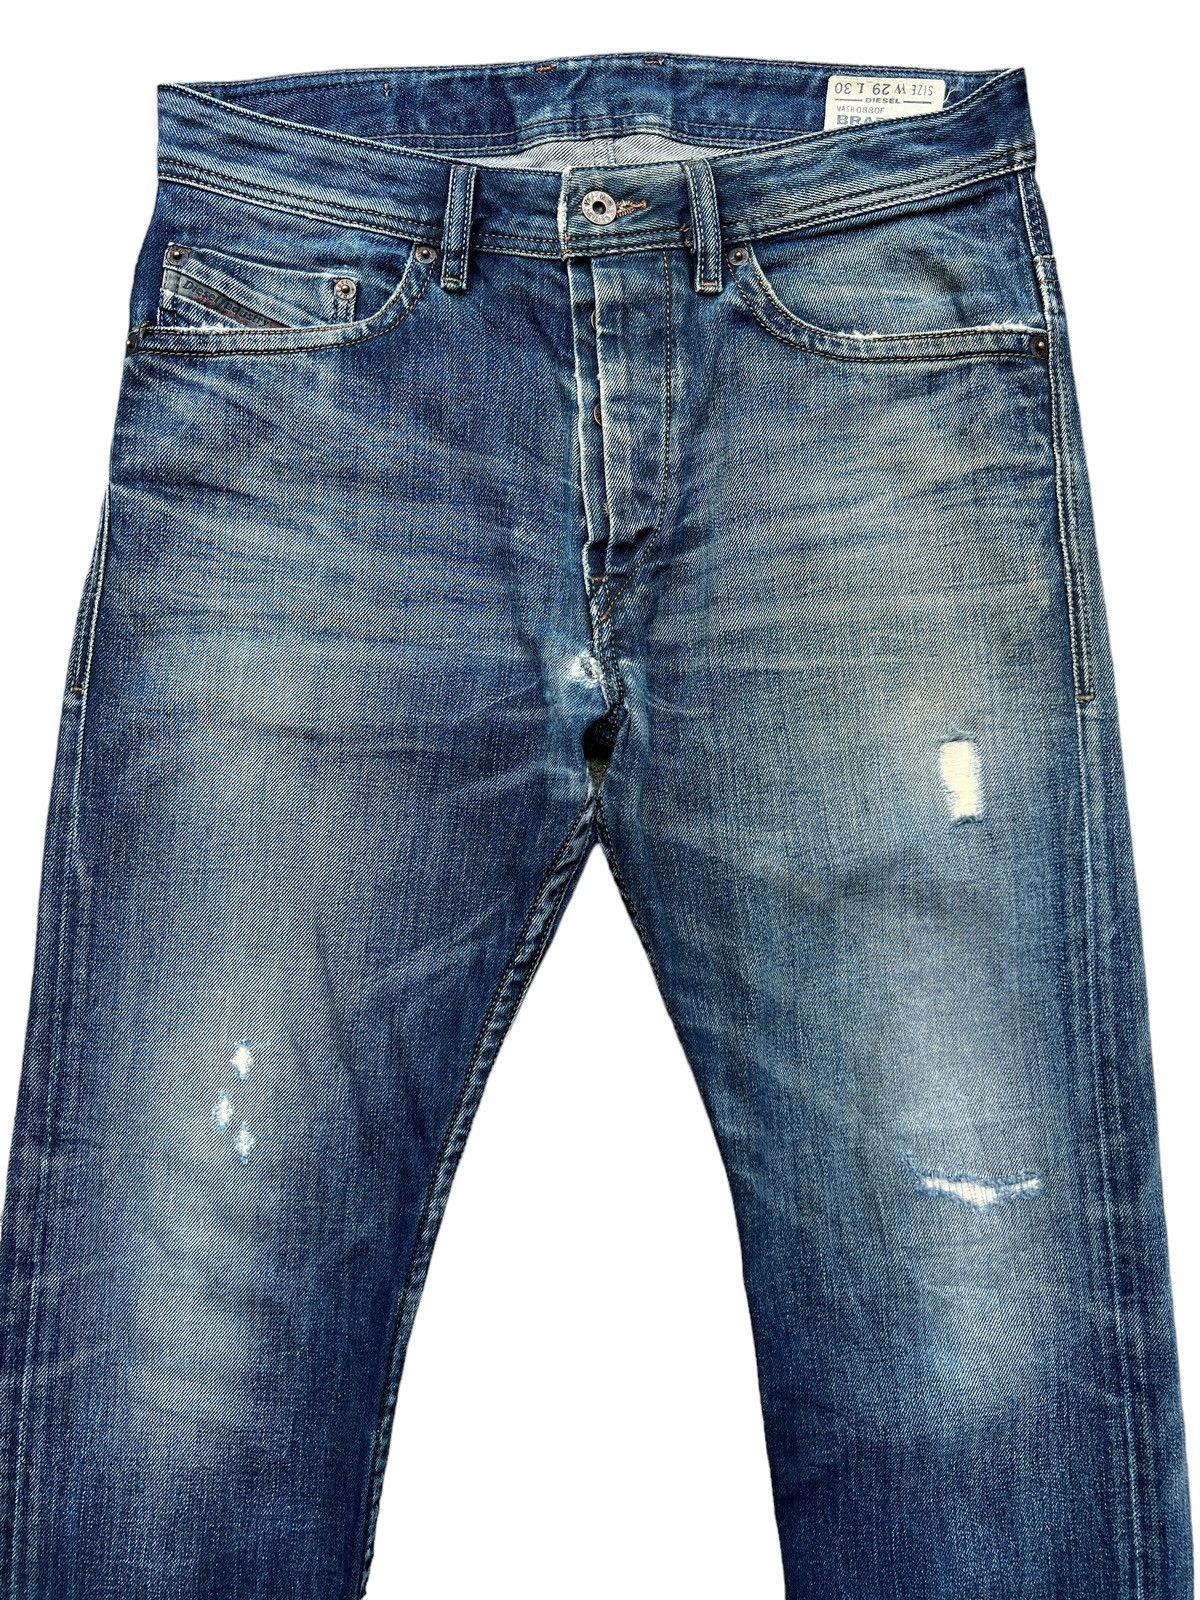 Vintage Diesel Industry Distressed Denim Jeans 32x31 - 4